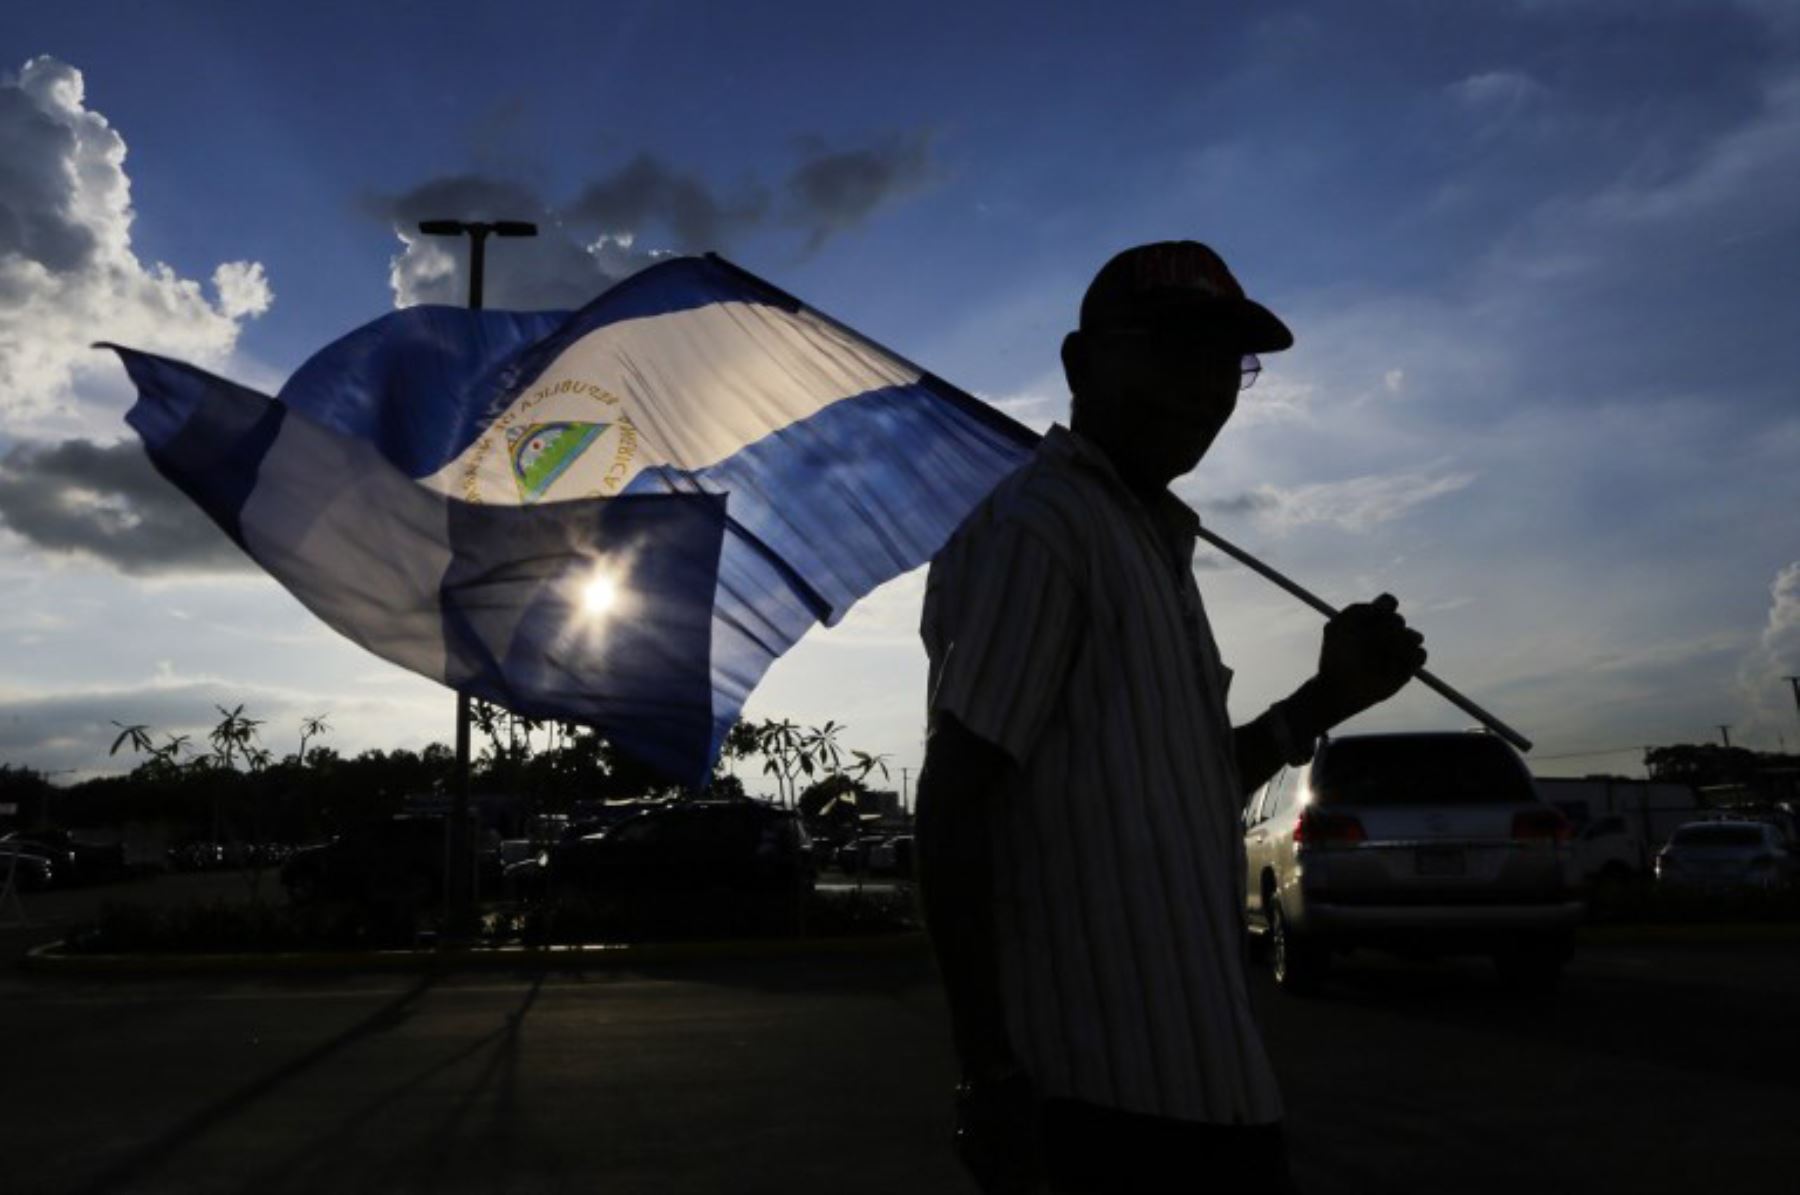 Estados Unidos pone fin a beneficio migratorio TPS para Nicaragua